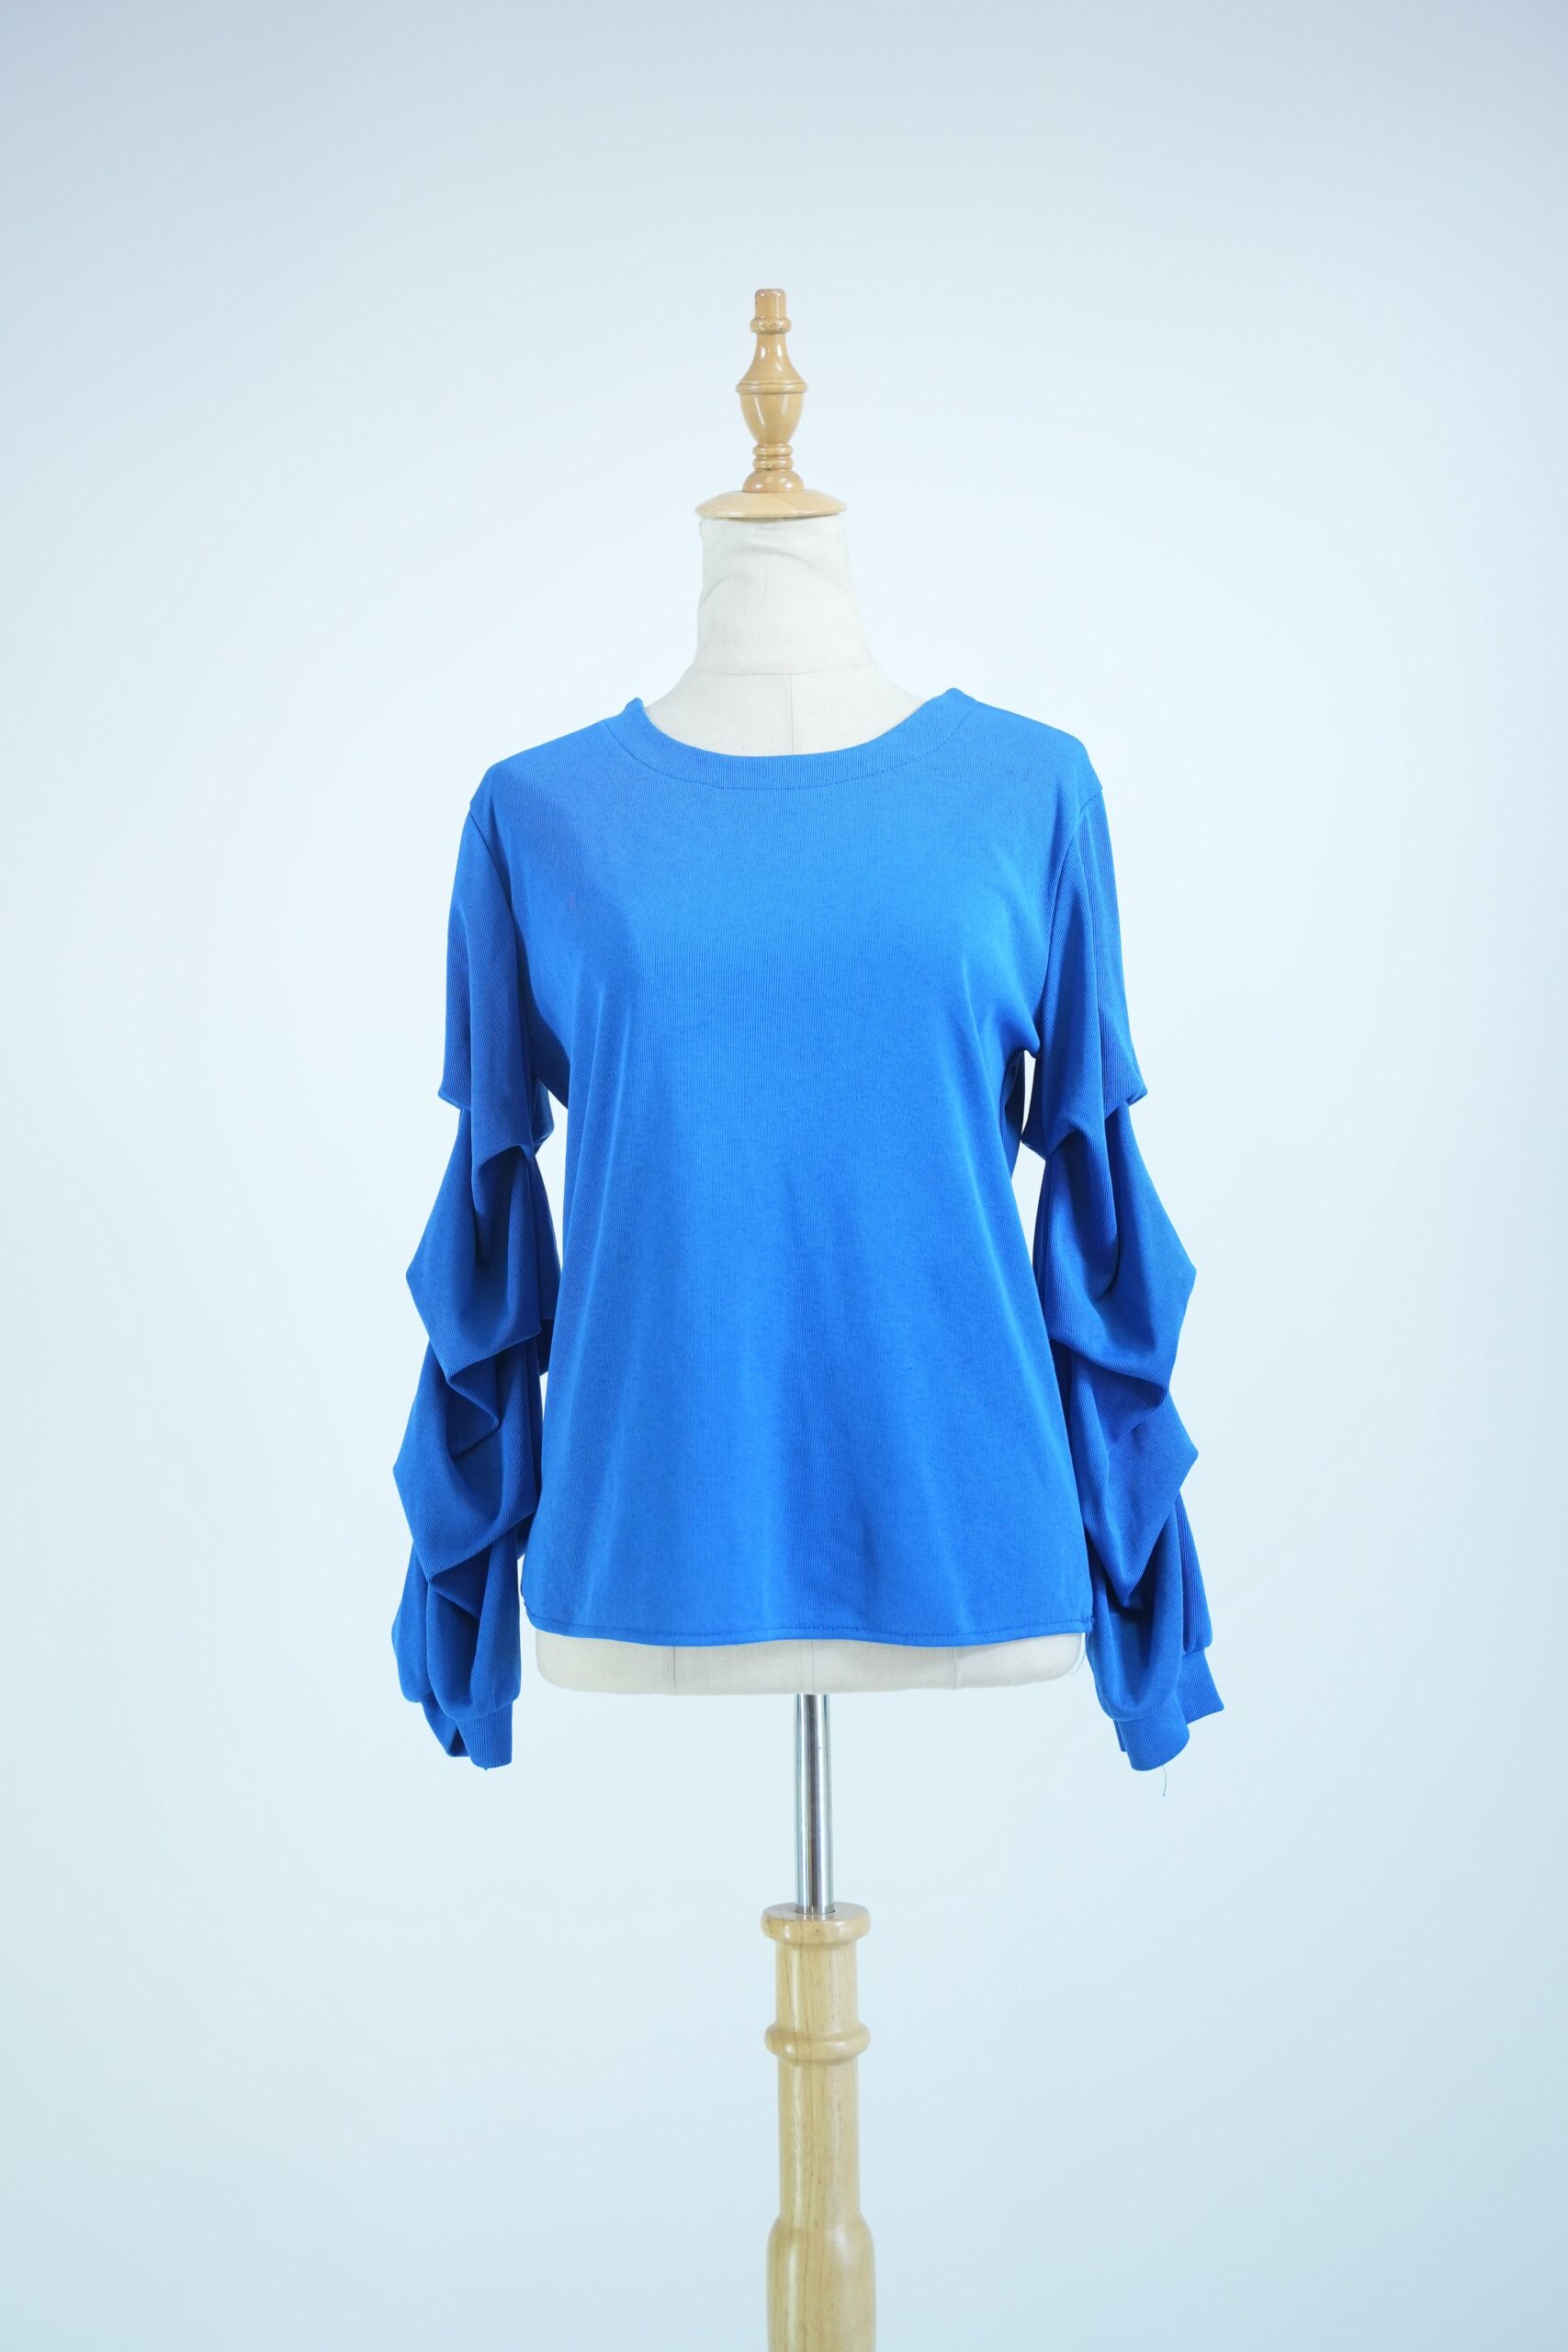 Blue Full Sleeve Top for Women